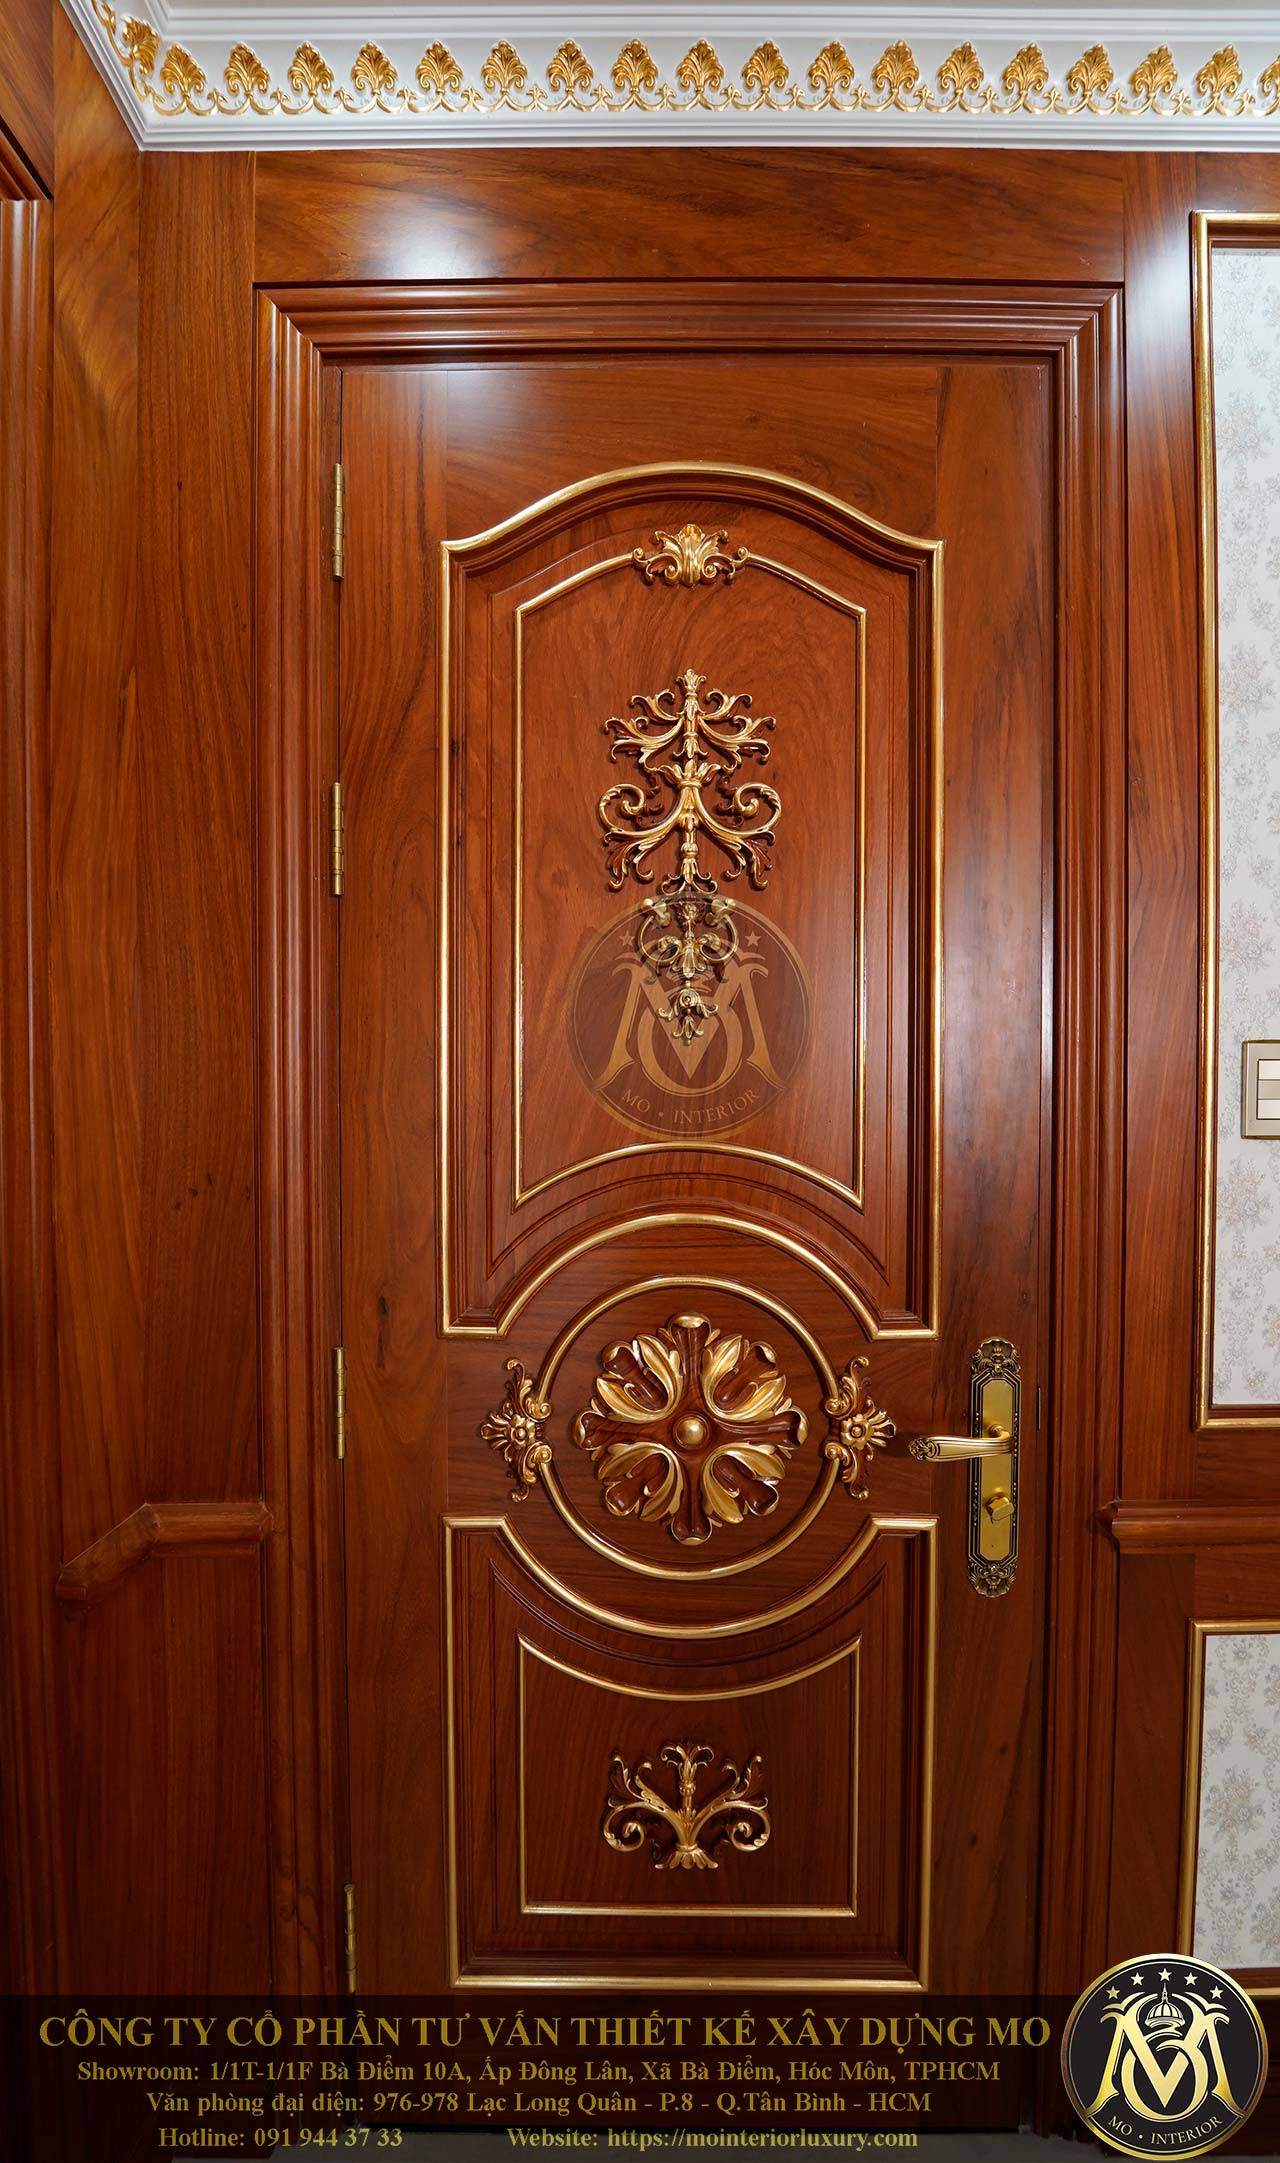 Mẫu cửa gỗ biệt thự tân cổ điển đẹp sang trọng và đẳng cấp - Nội ...